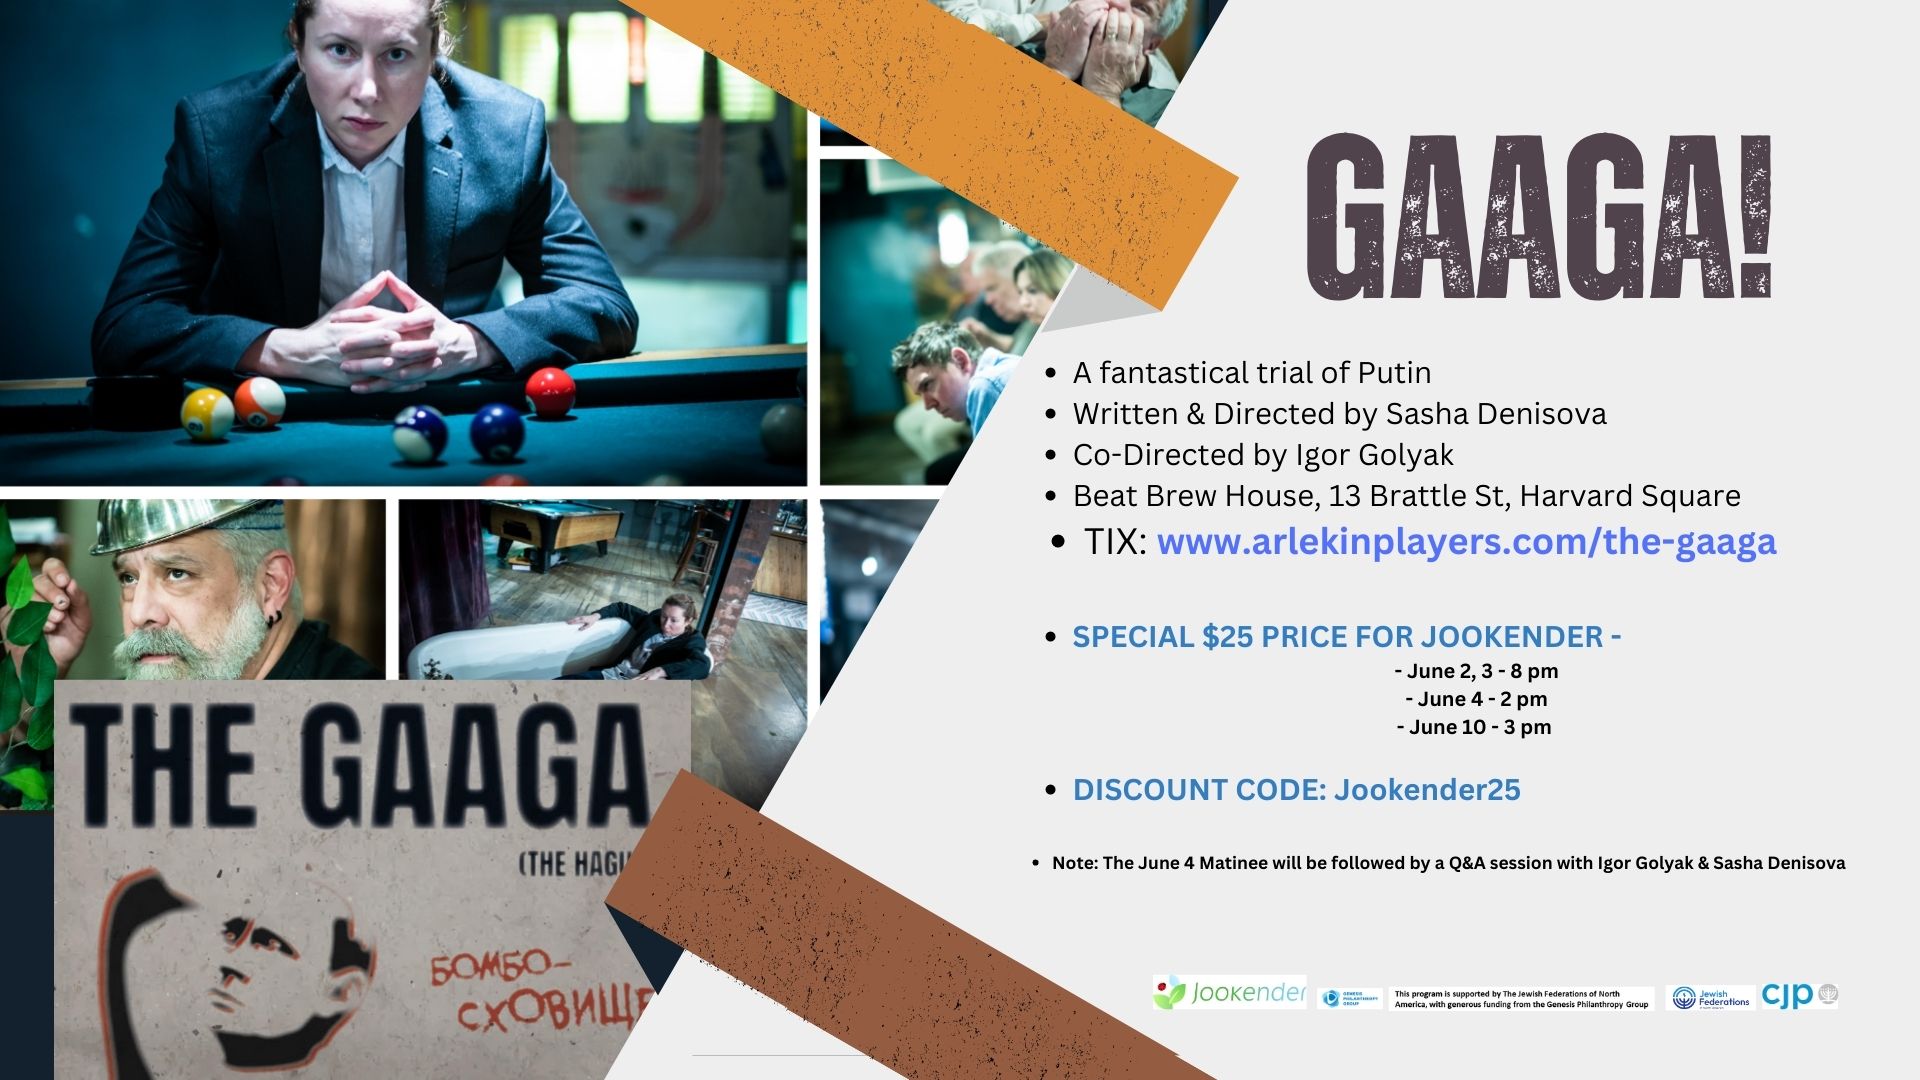 Gaaga! - Discounted Tickets